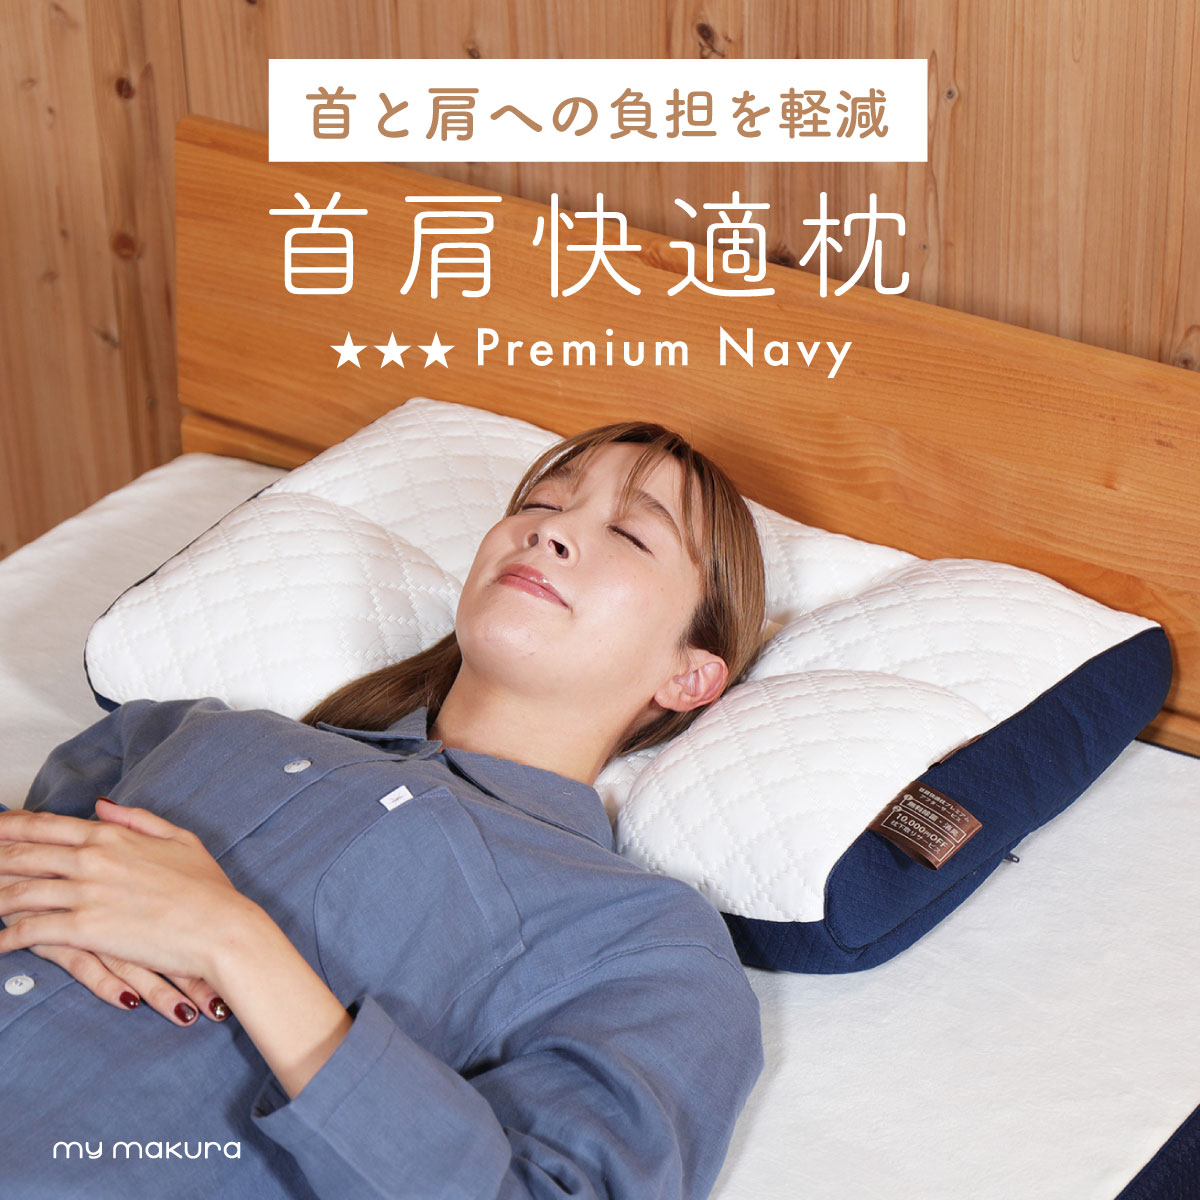 快適な睡眠を✨ ✨ ⭐️首肩保護枕 ⭐ tic-guinee.net